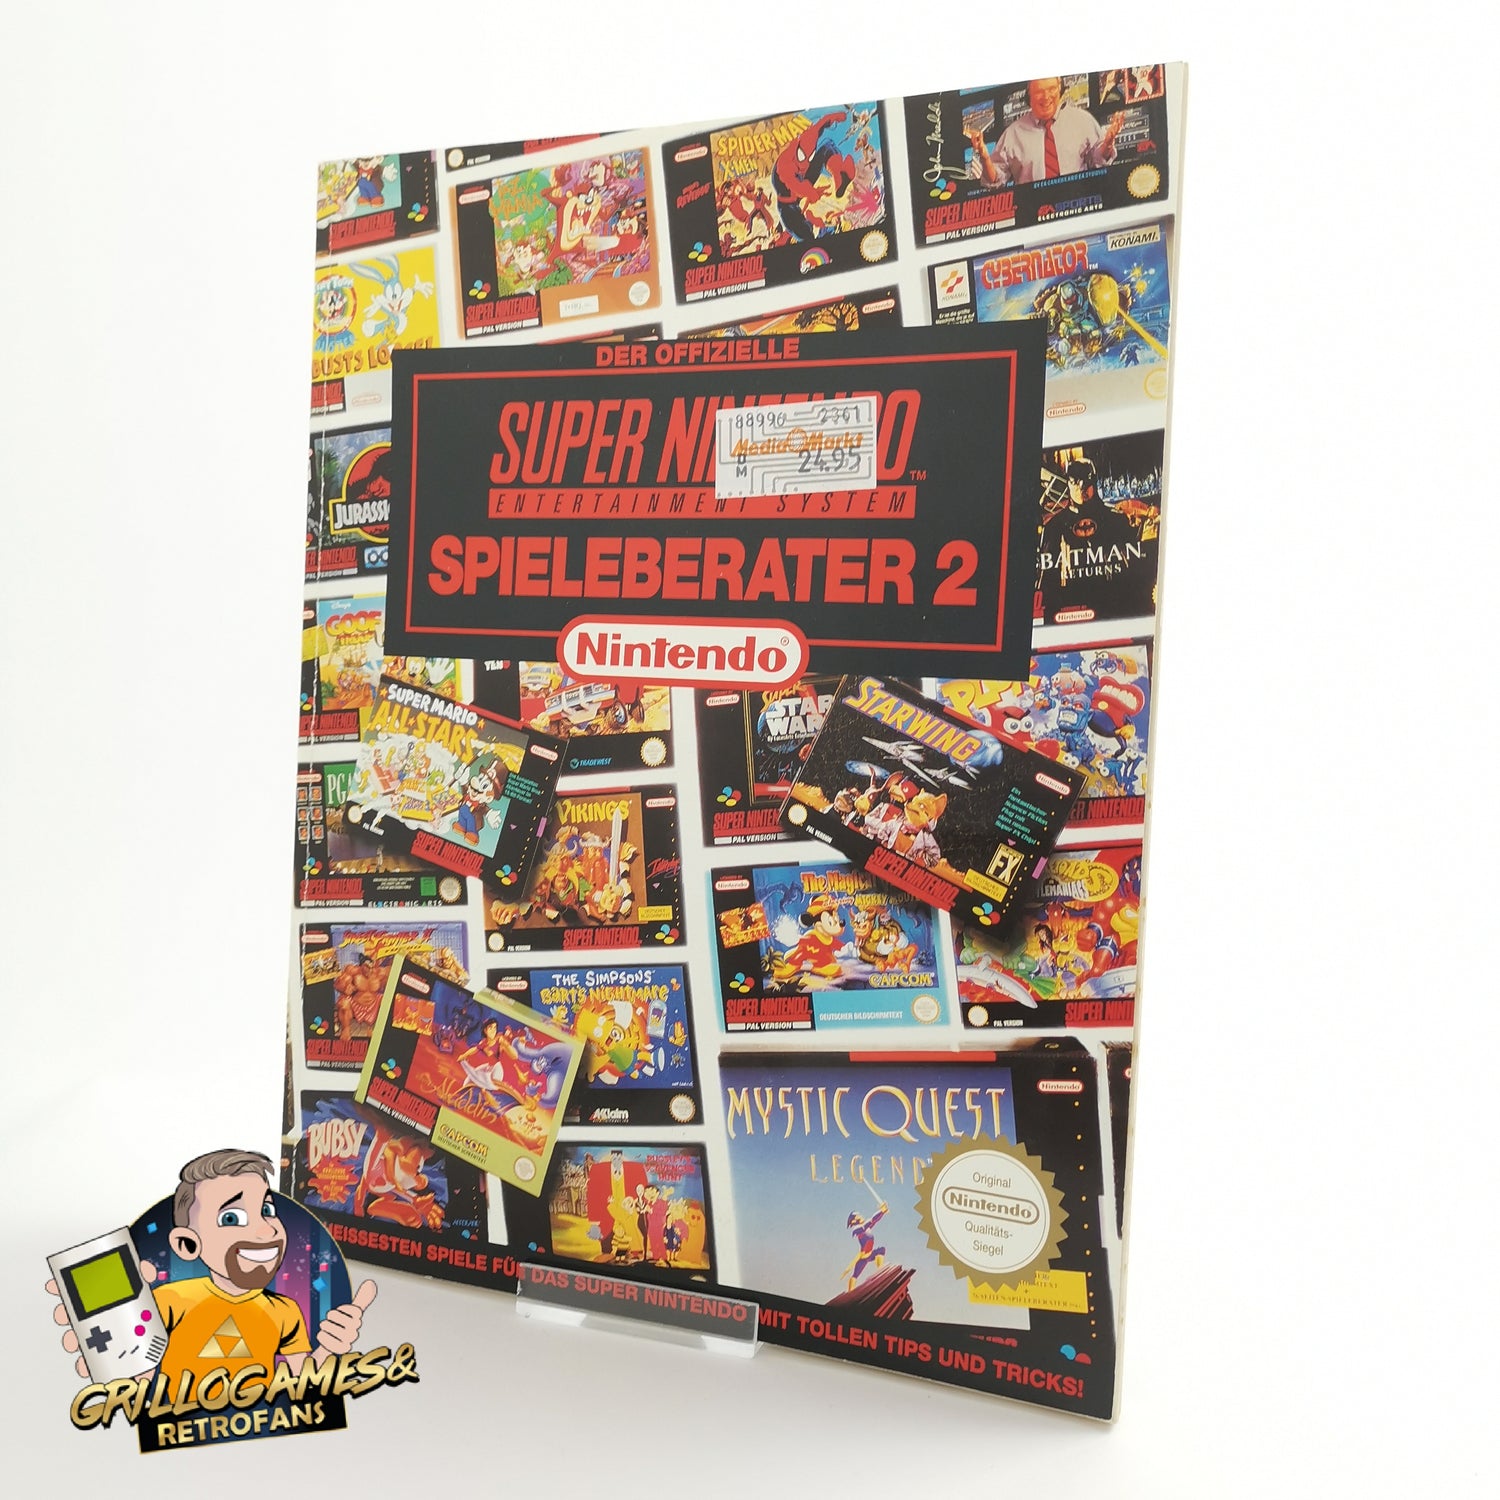 Der offizielle Super Nintendo Spieleberater 2 | Lösungsbuch SNES | Guide